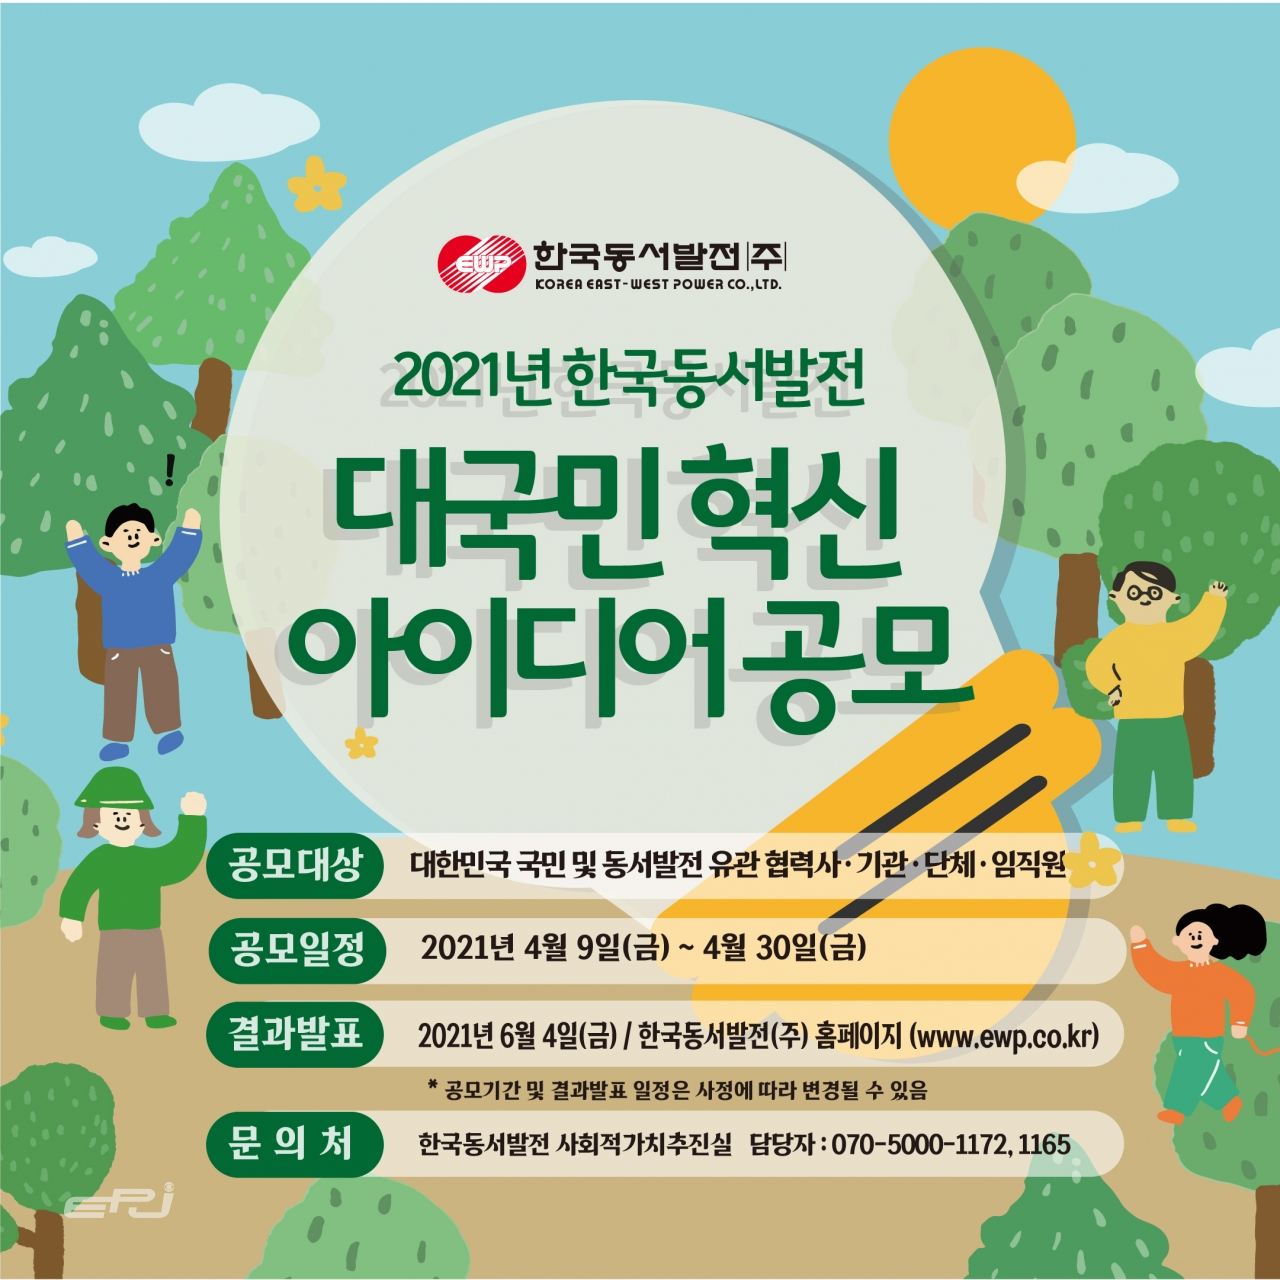 한국동서발전이 개최하는 '2021년 대국민 혁신 아이디어 공모전' 안내 포스터